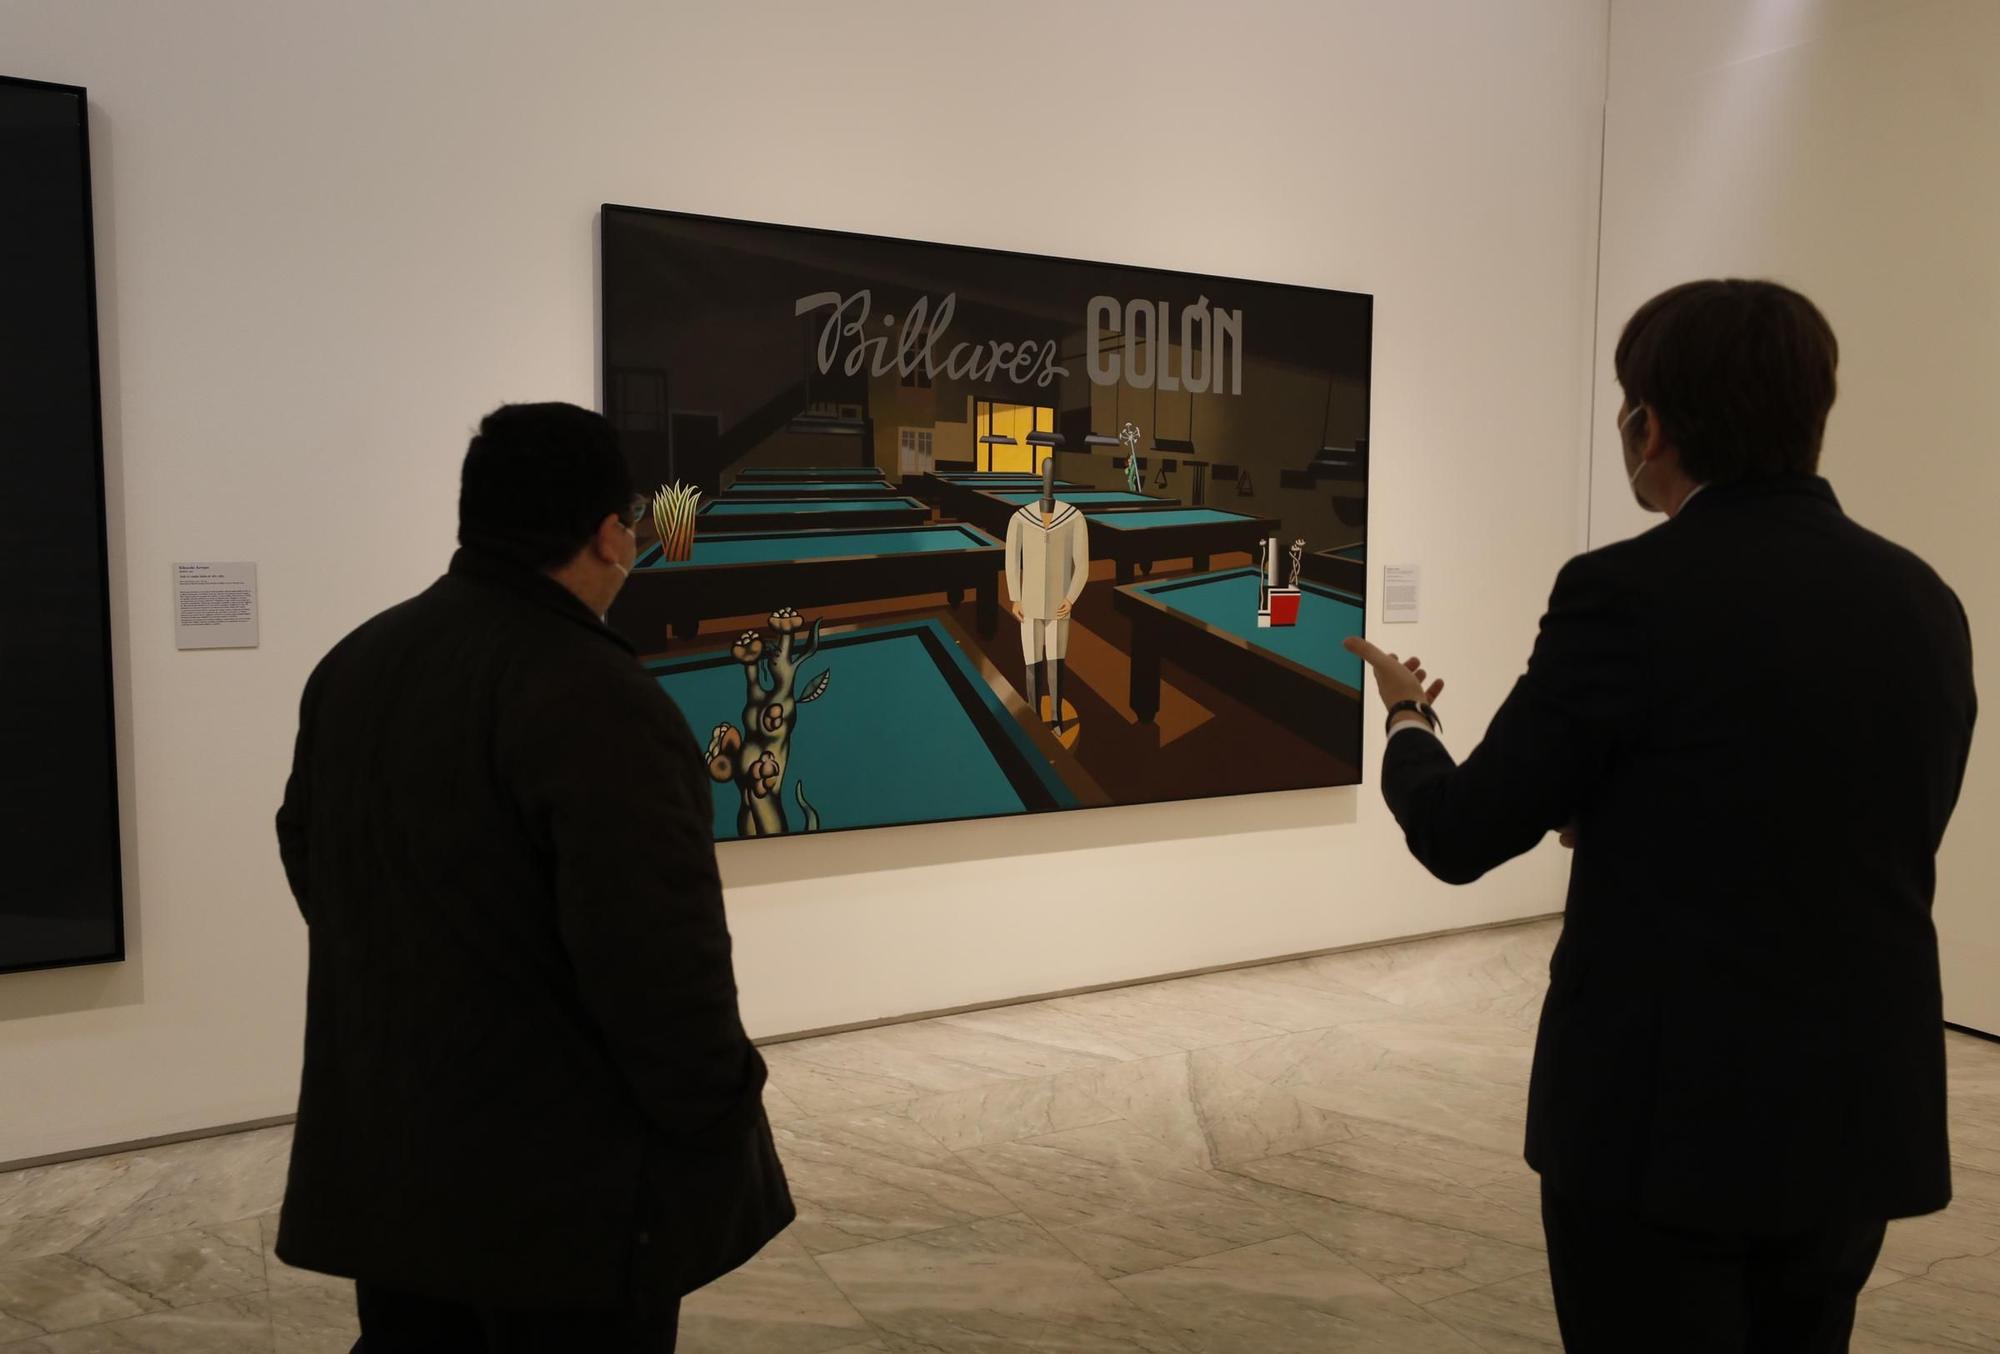 Inauguración de la exposición en el Bellas Artes de las obras donadas por Plácido Arango